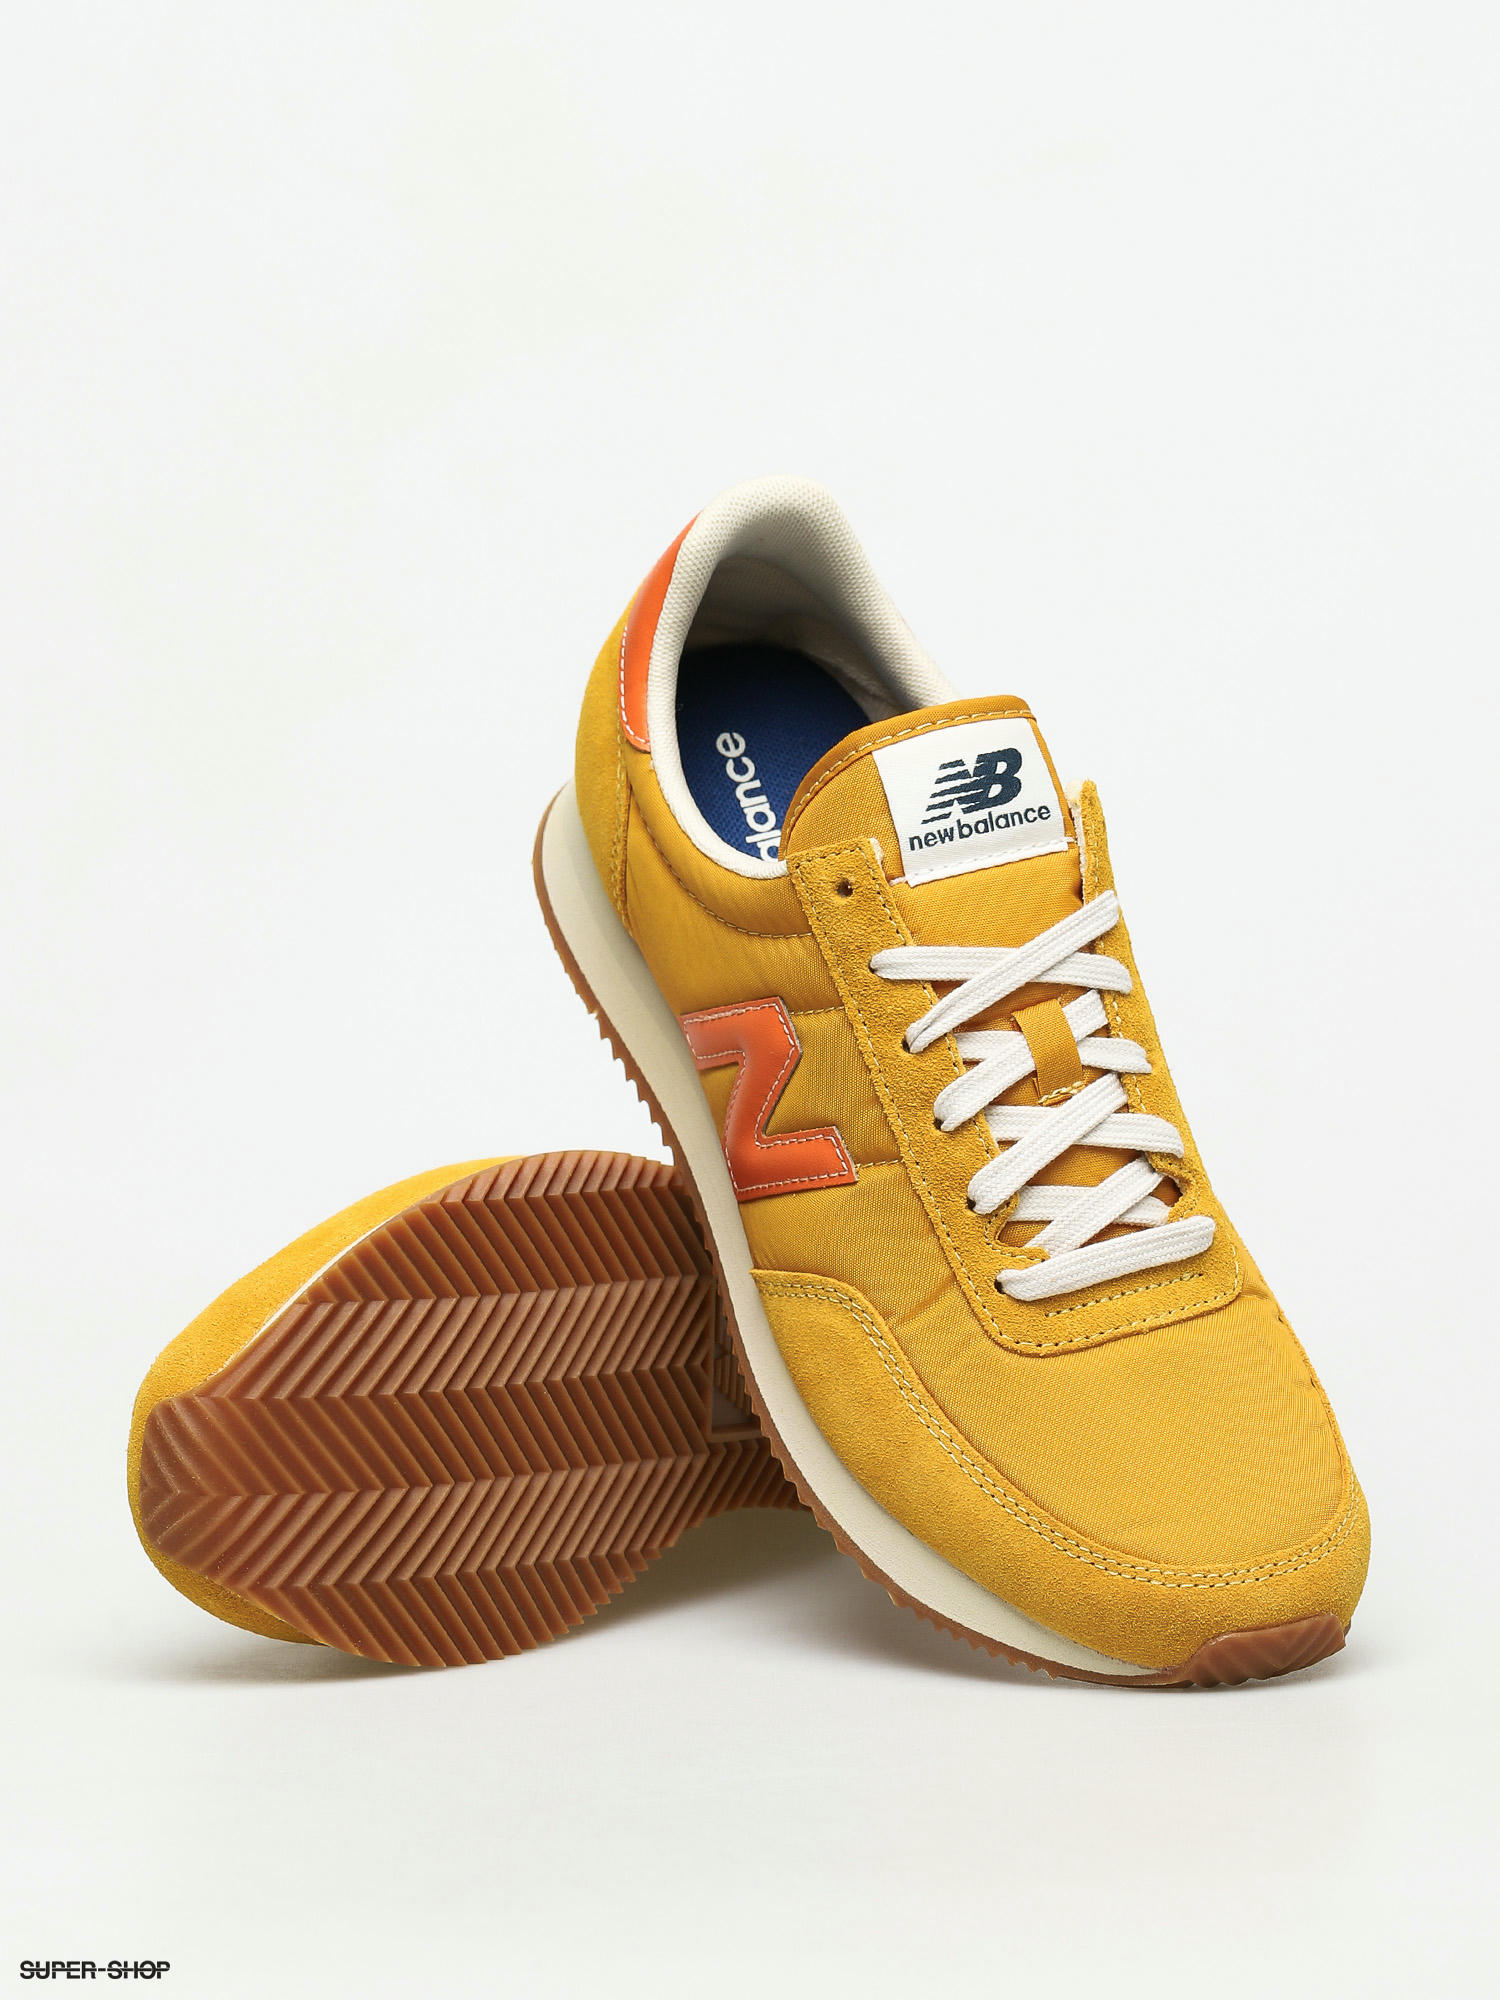 New Balance 720 Shoes (yellow/orange)